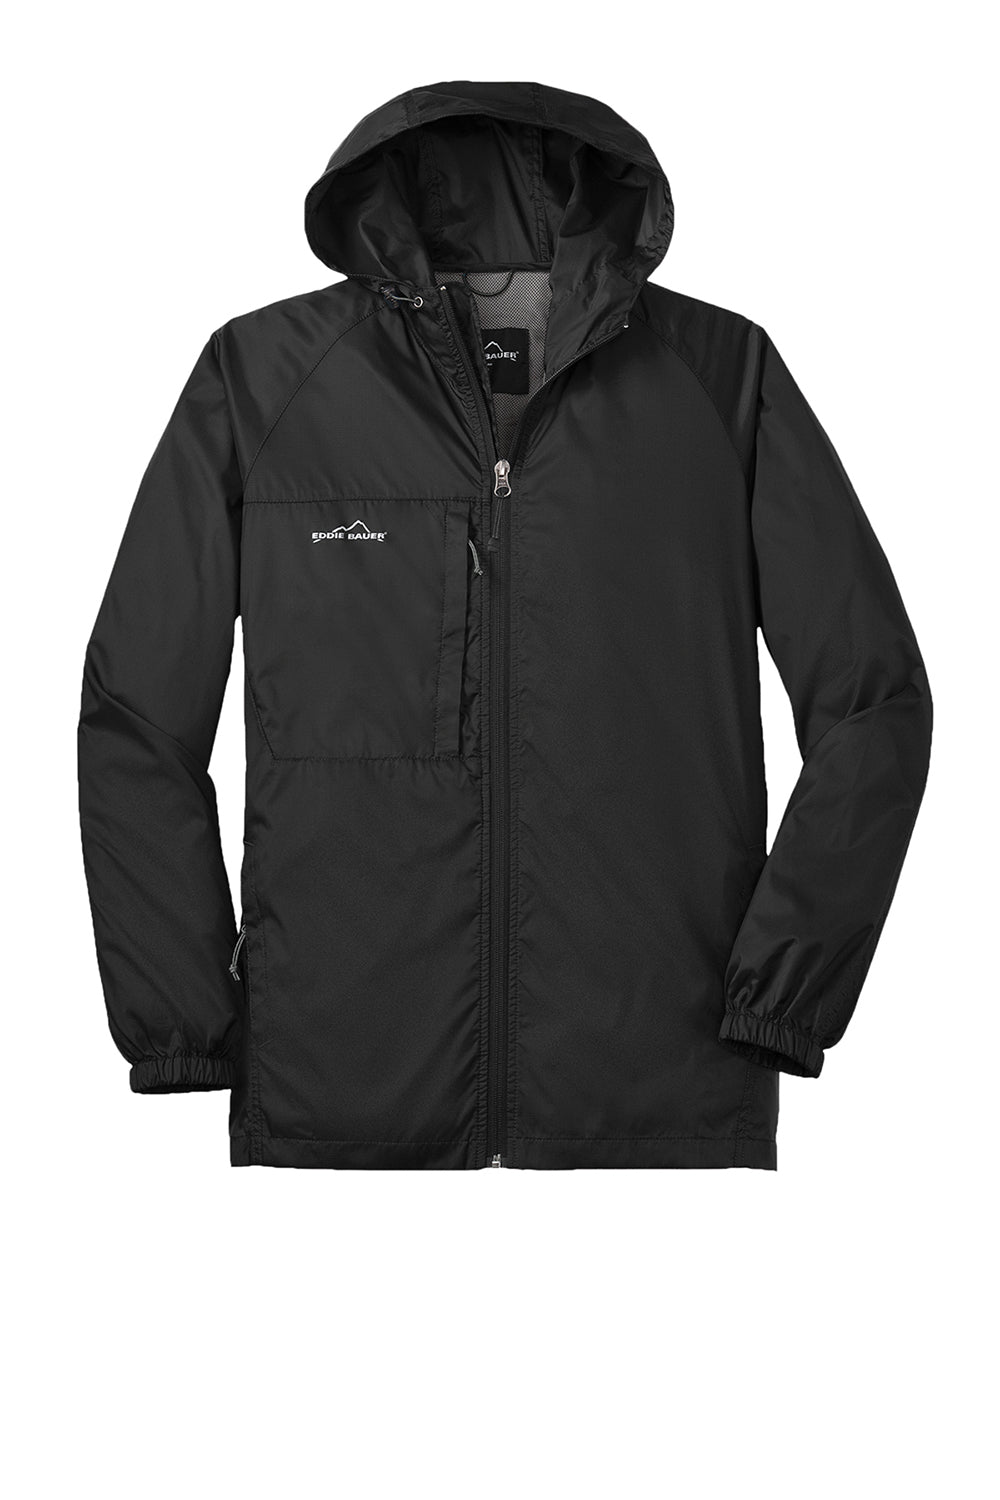 Eddie Bauer EB500 Mens Packable Wind Resistant Full Zip Hooded Jacket Black Flat Front